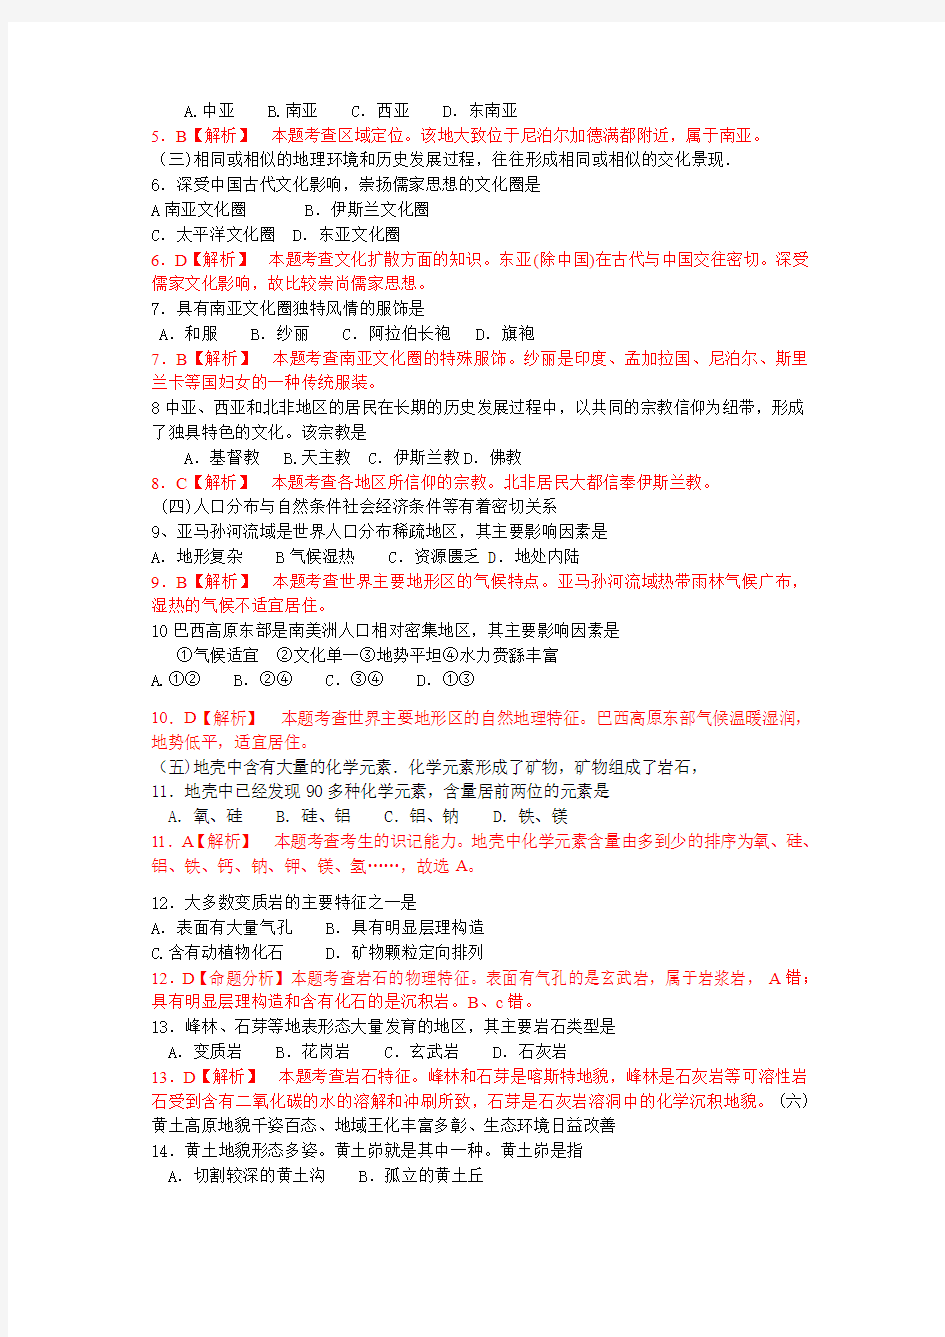 2010年高考地理试题(上海卷)解析版